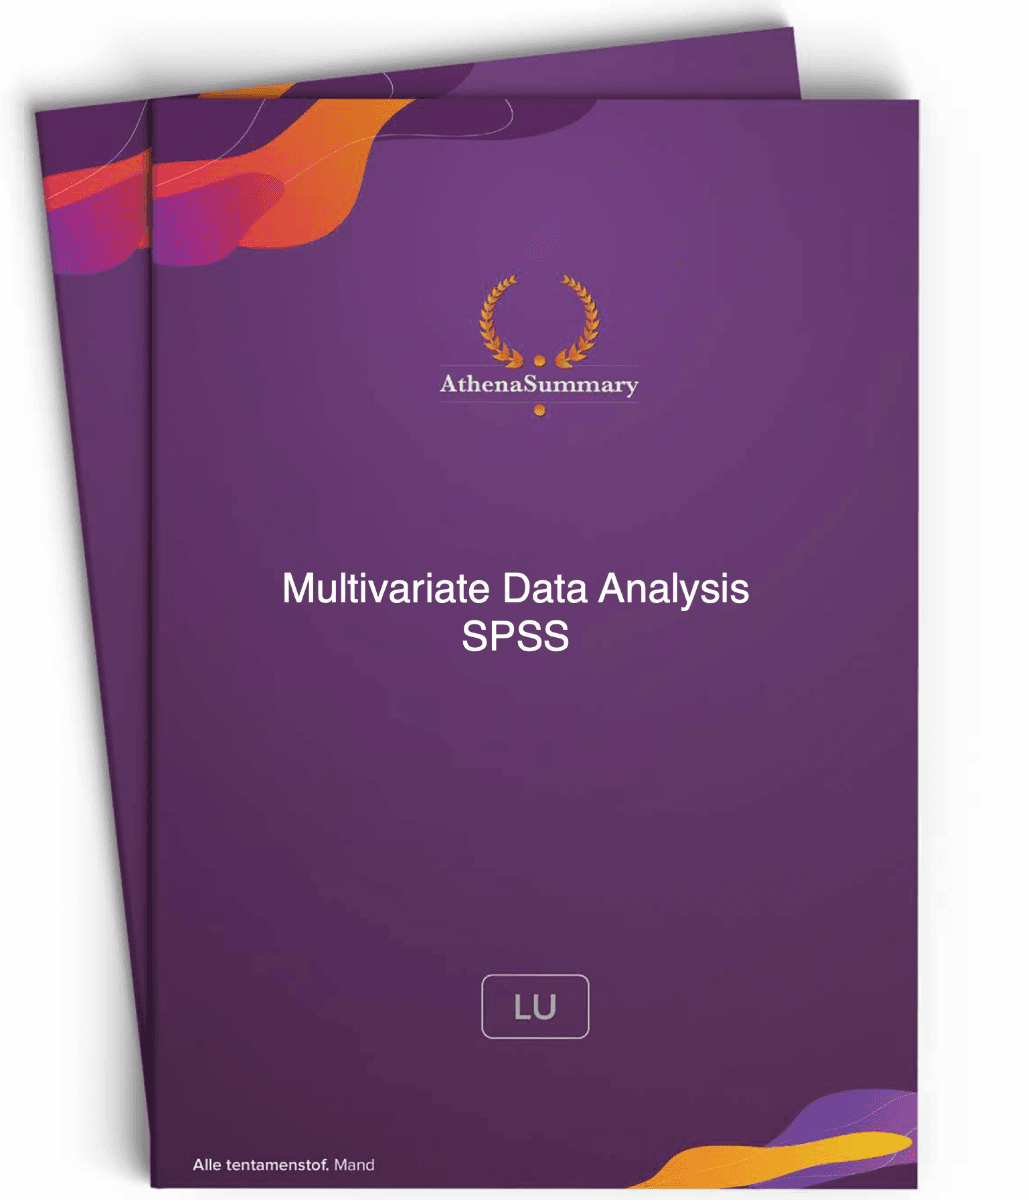 SPSS Summary - Multivariate Data Analysis 